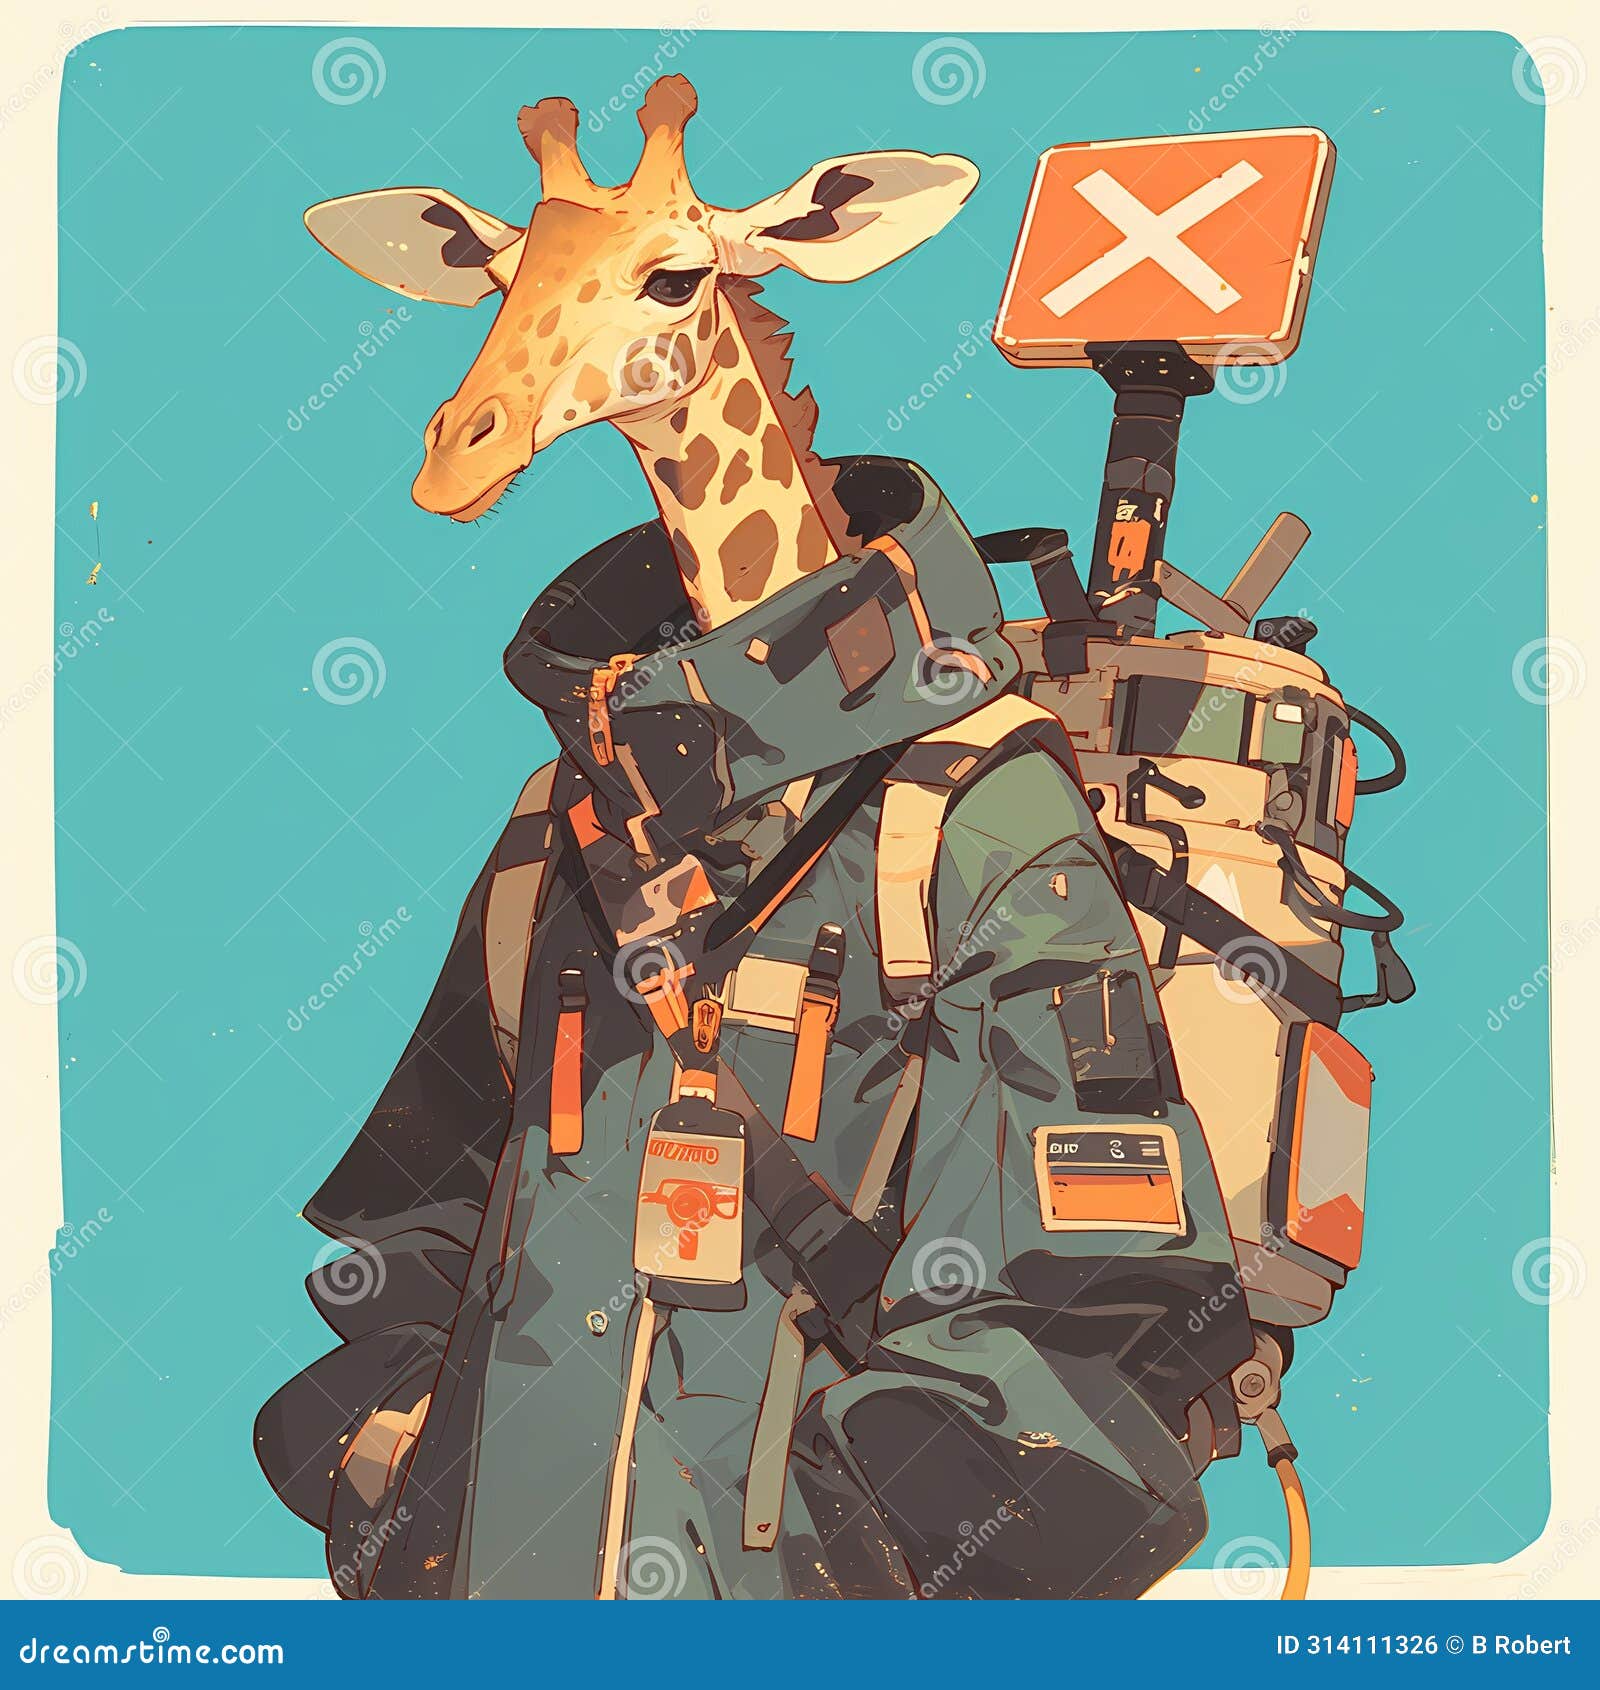 giraffe adventurer, a whimsical journey.